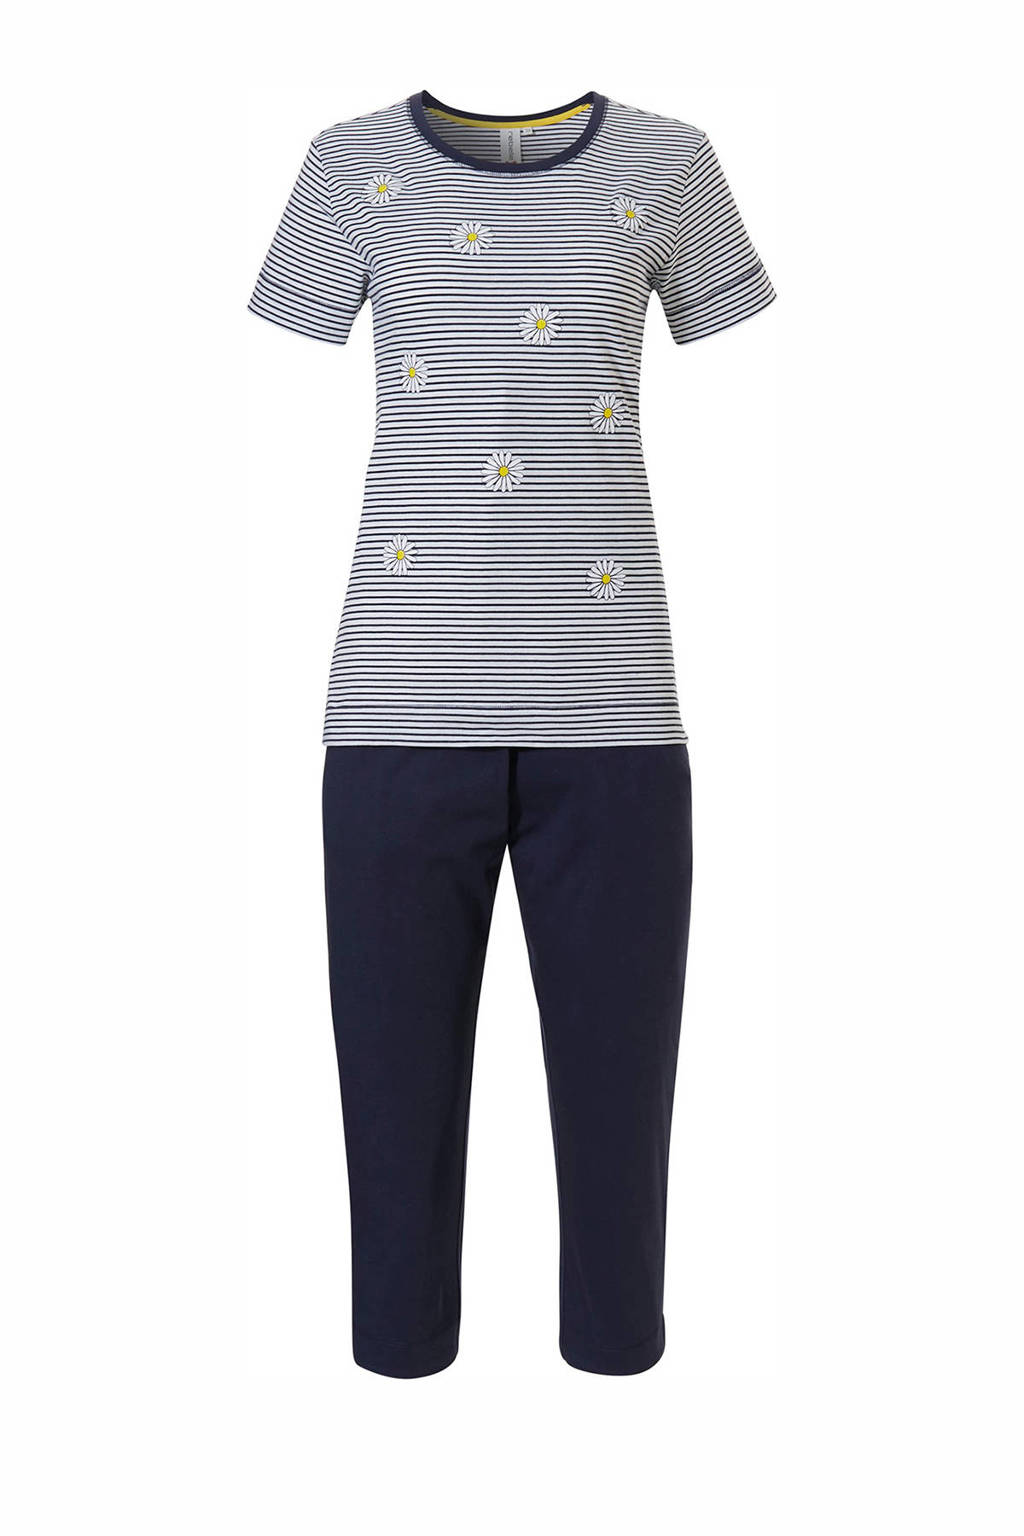 Rebelle pyjama met strepen donkerblauw/wit